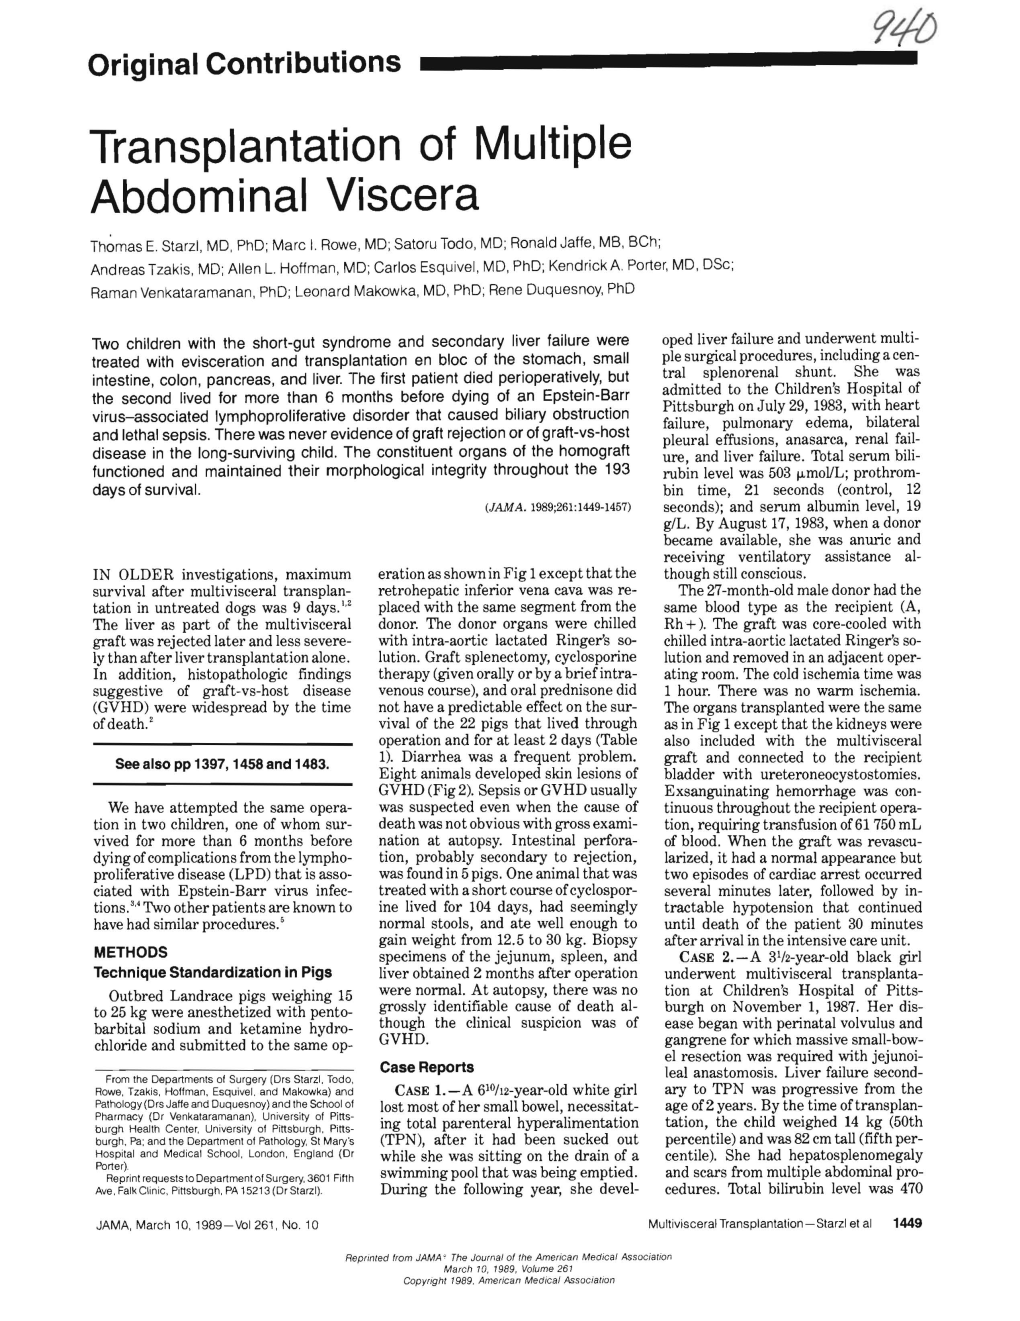 Transplantation of Multiple Abdominal Viscera